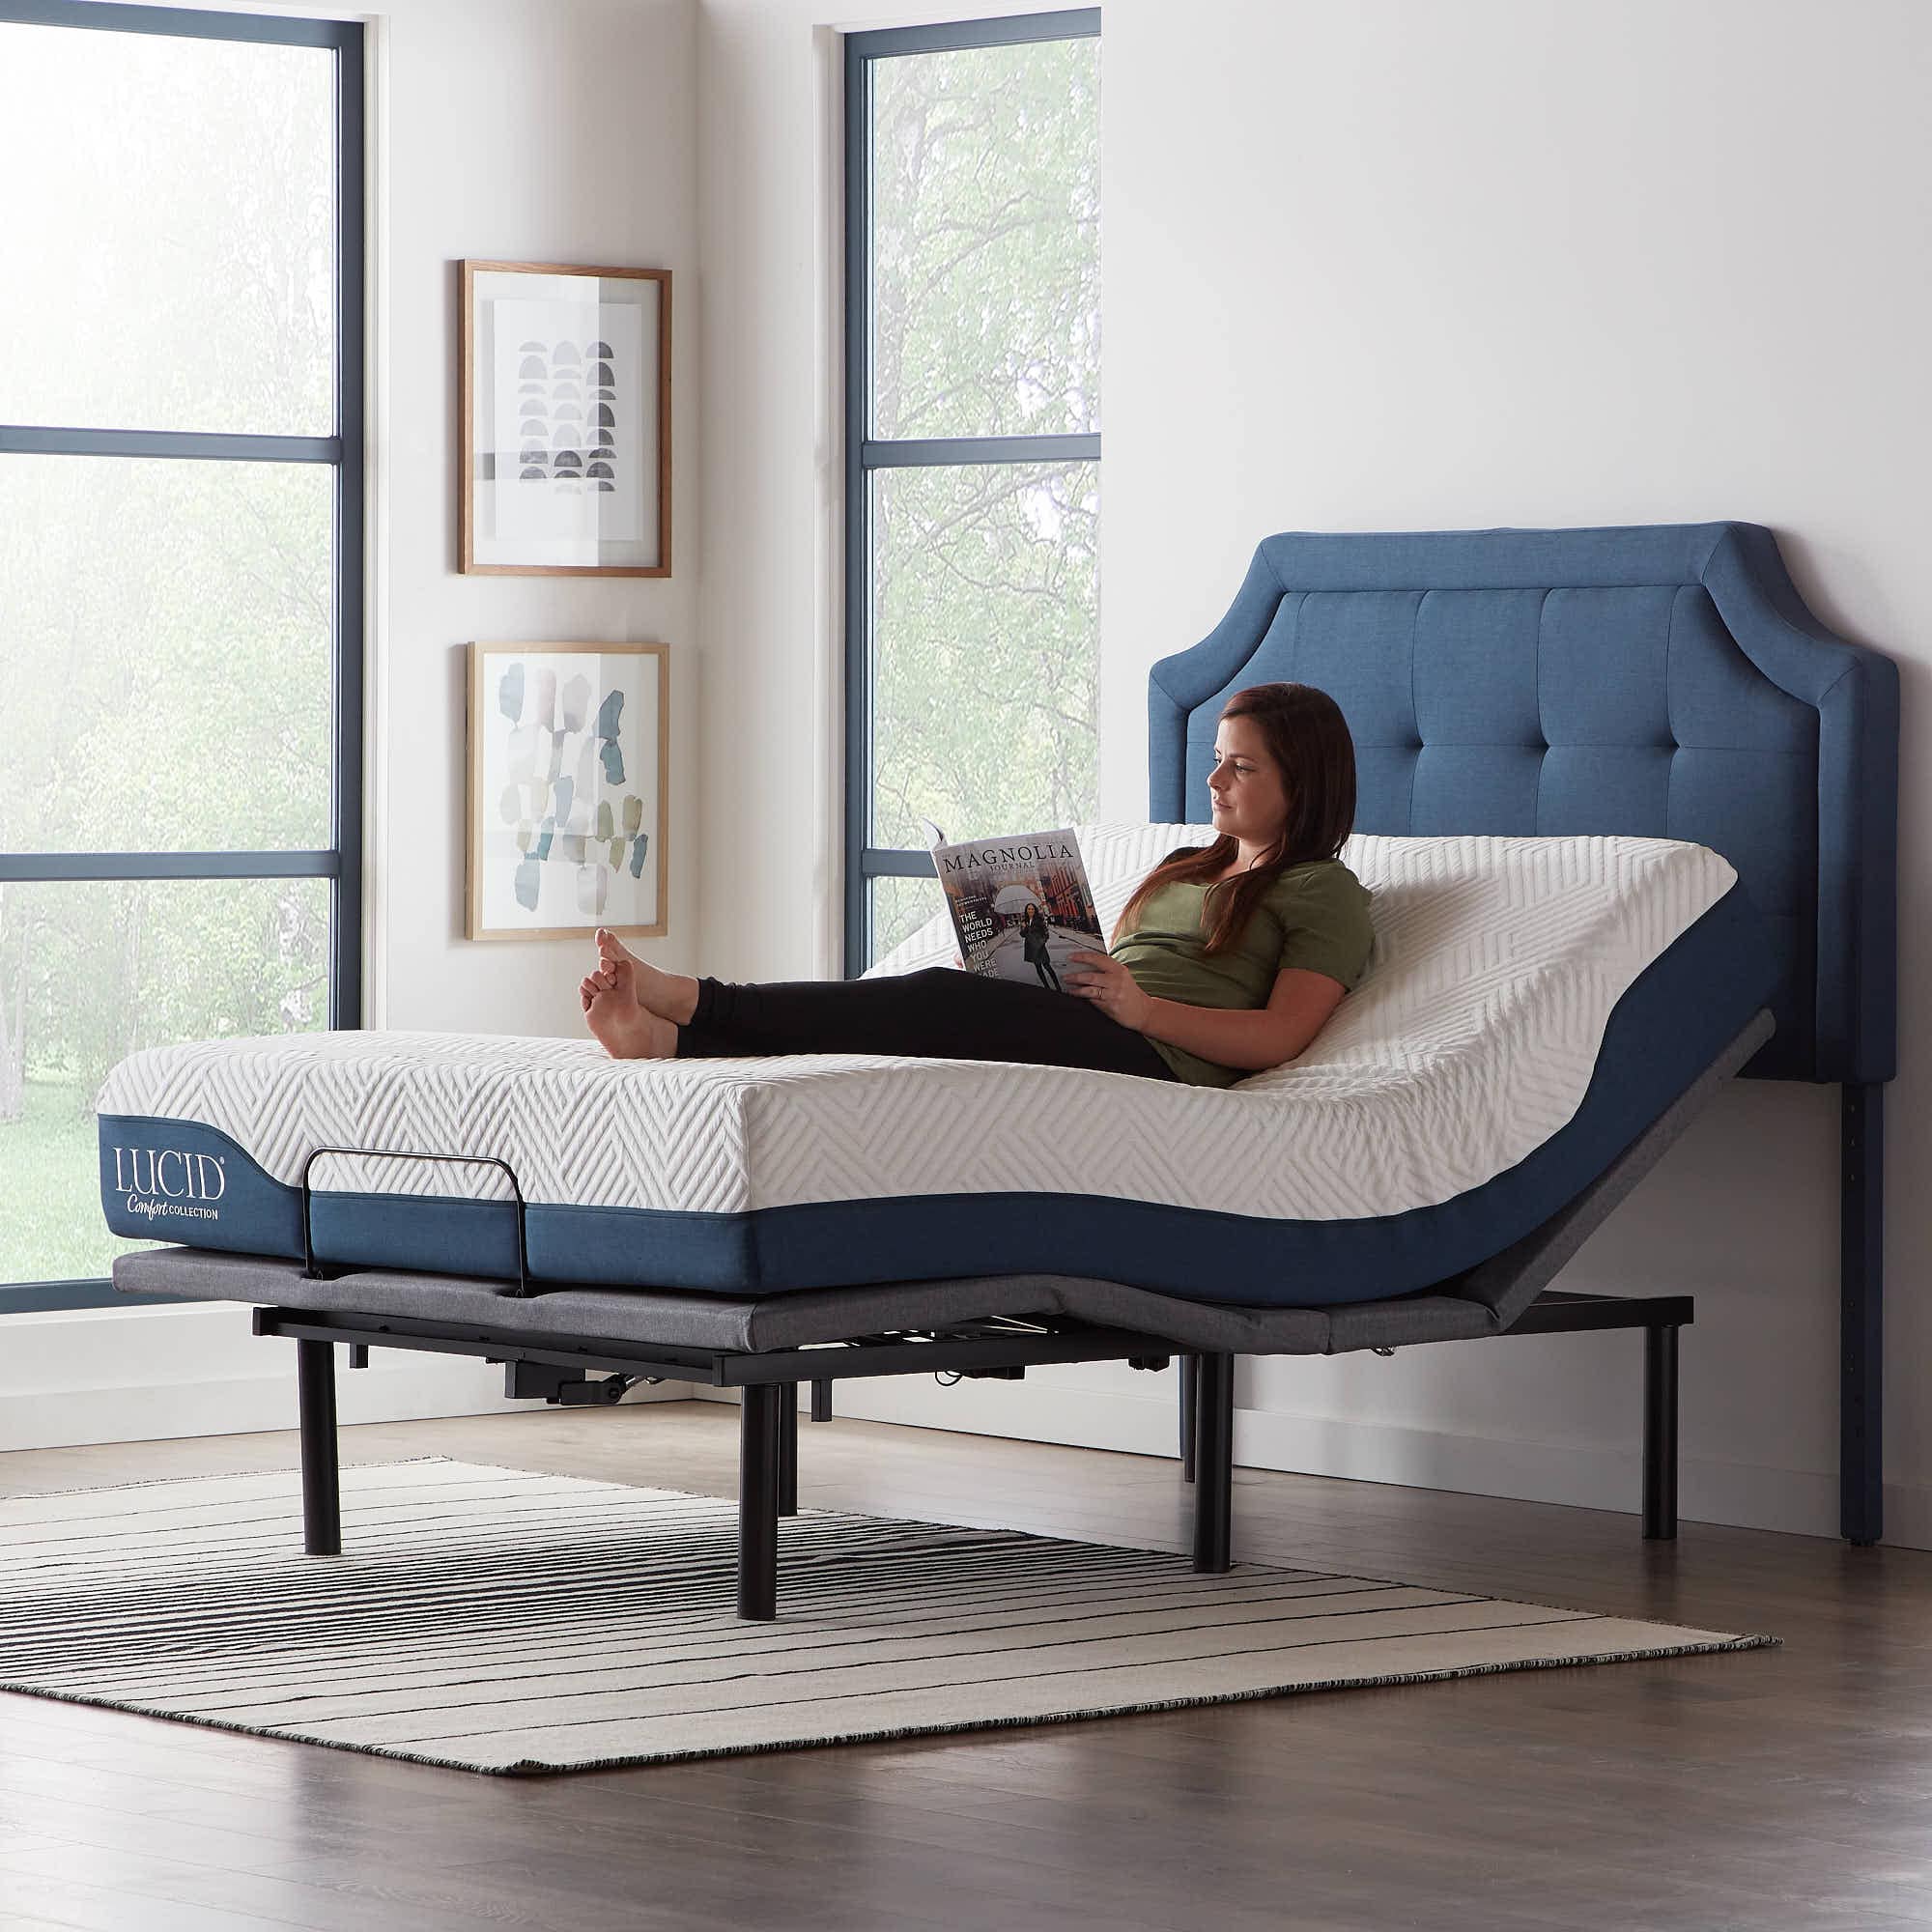 LUCID Comfort Collection Deluxe Gray Queen Metal Adjustable Bed in